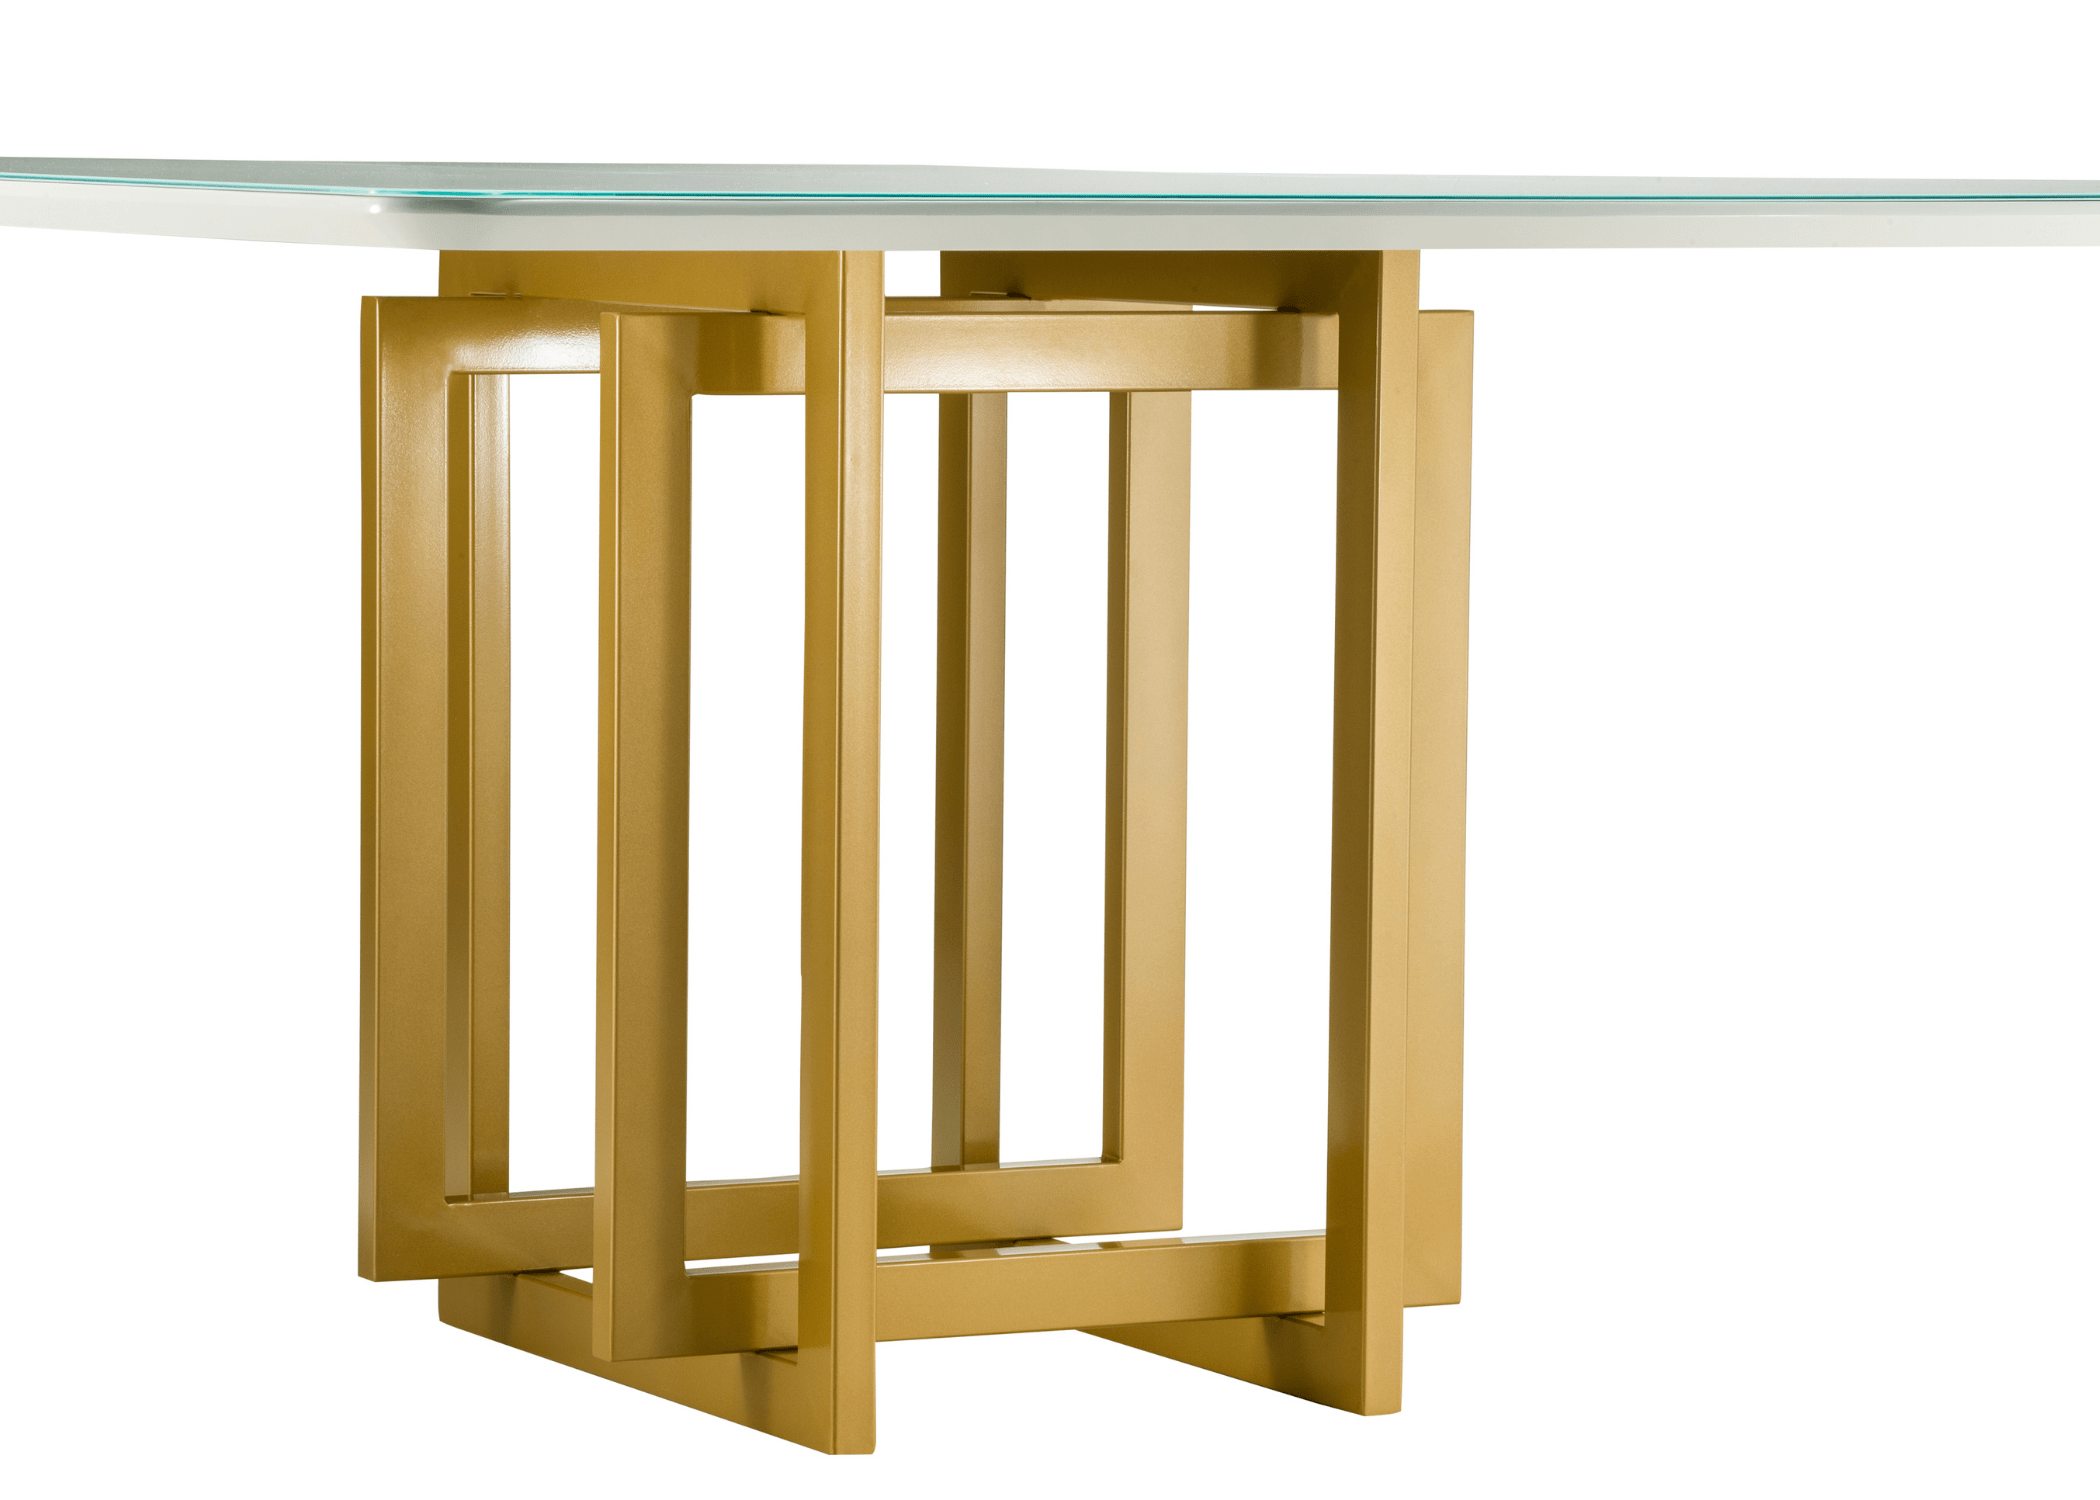 Detalhe da base de aço carbono da mesa de jantar Girassol, expressando modernidade e sofisticação.